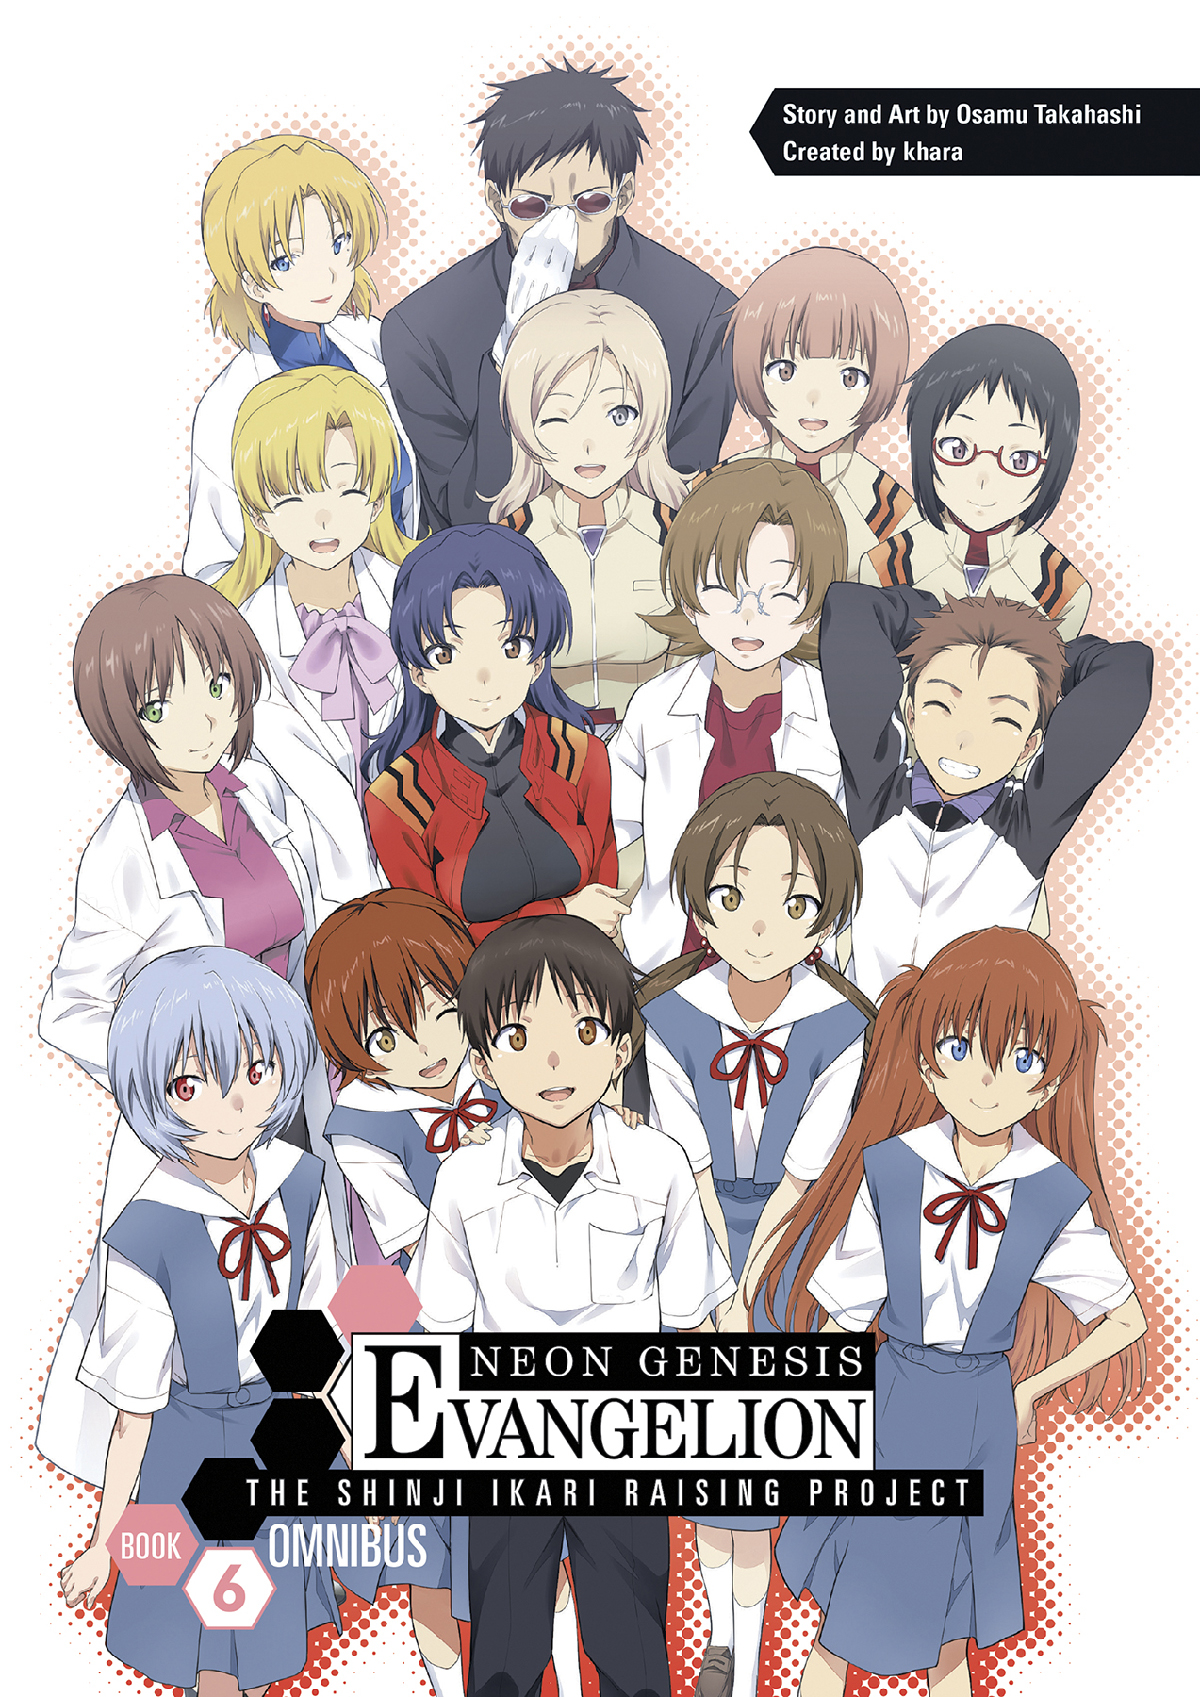 Neon Genesis Evangelion Shinji Ikari Raising Project Omnibus Manga Volume 6